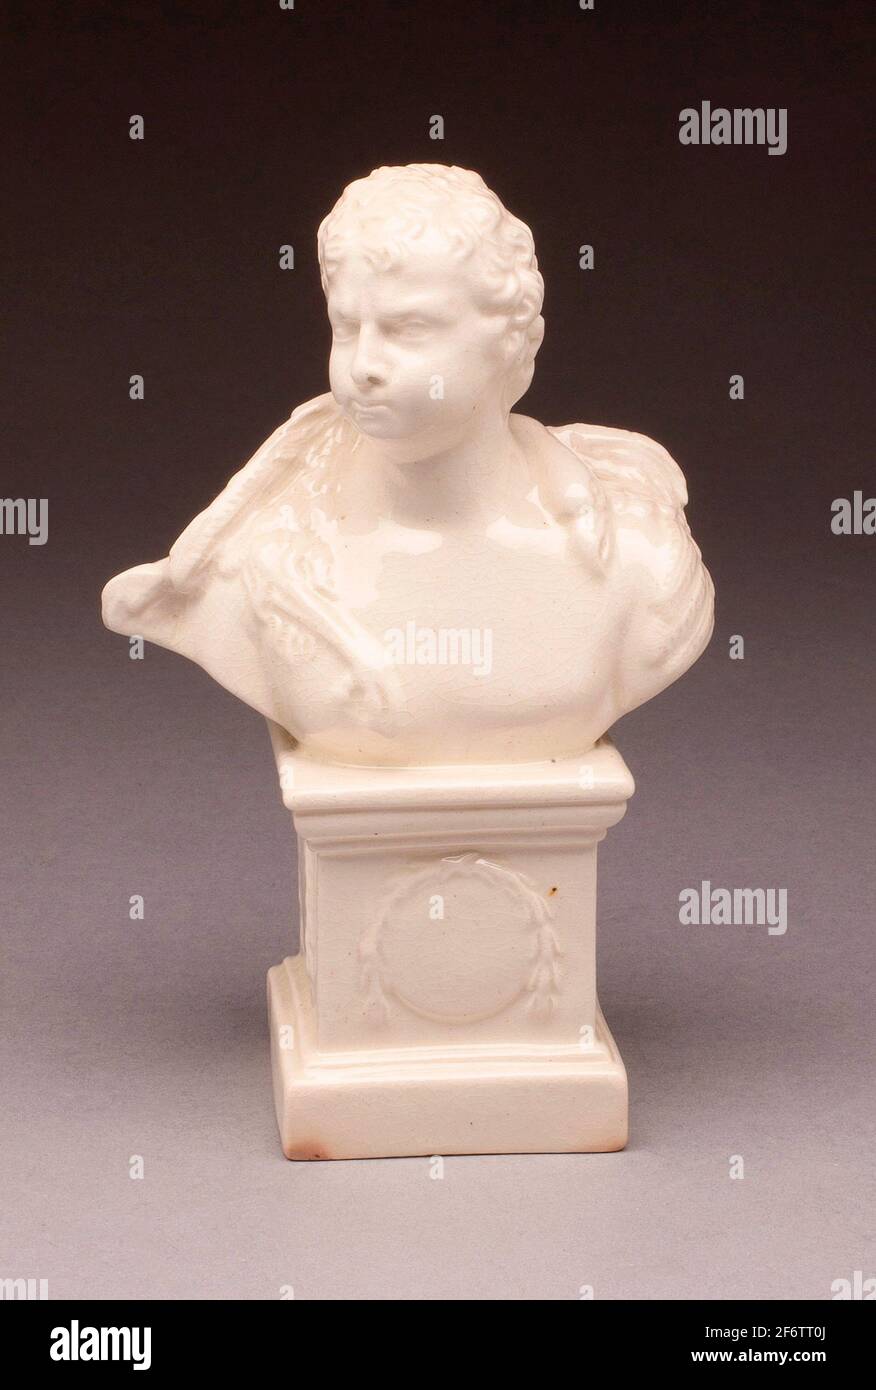 Busto di un uomo drappeggiato con un inglese Swan-1780/90-Leeds Pottery, fondato nel 1756. Terracotta smaltata al piombo (creamware). 1780-1790. Yorkshire. Foto Stock